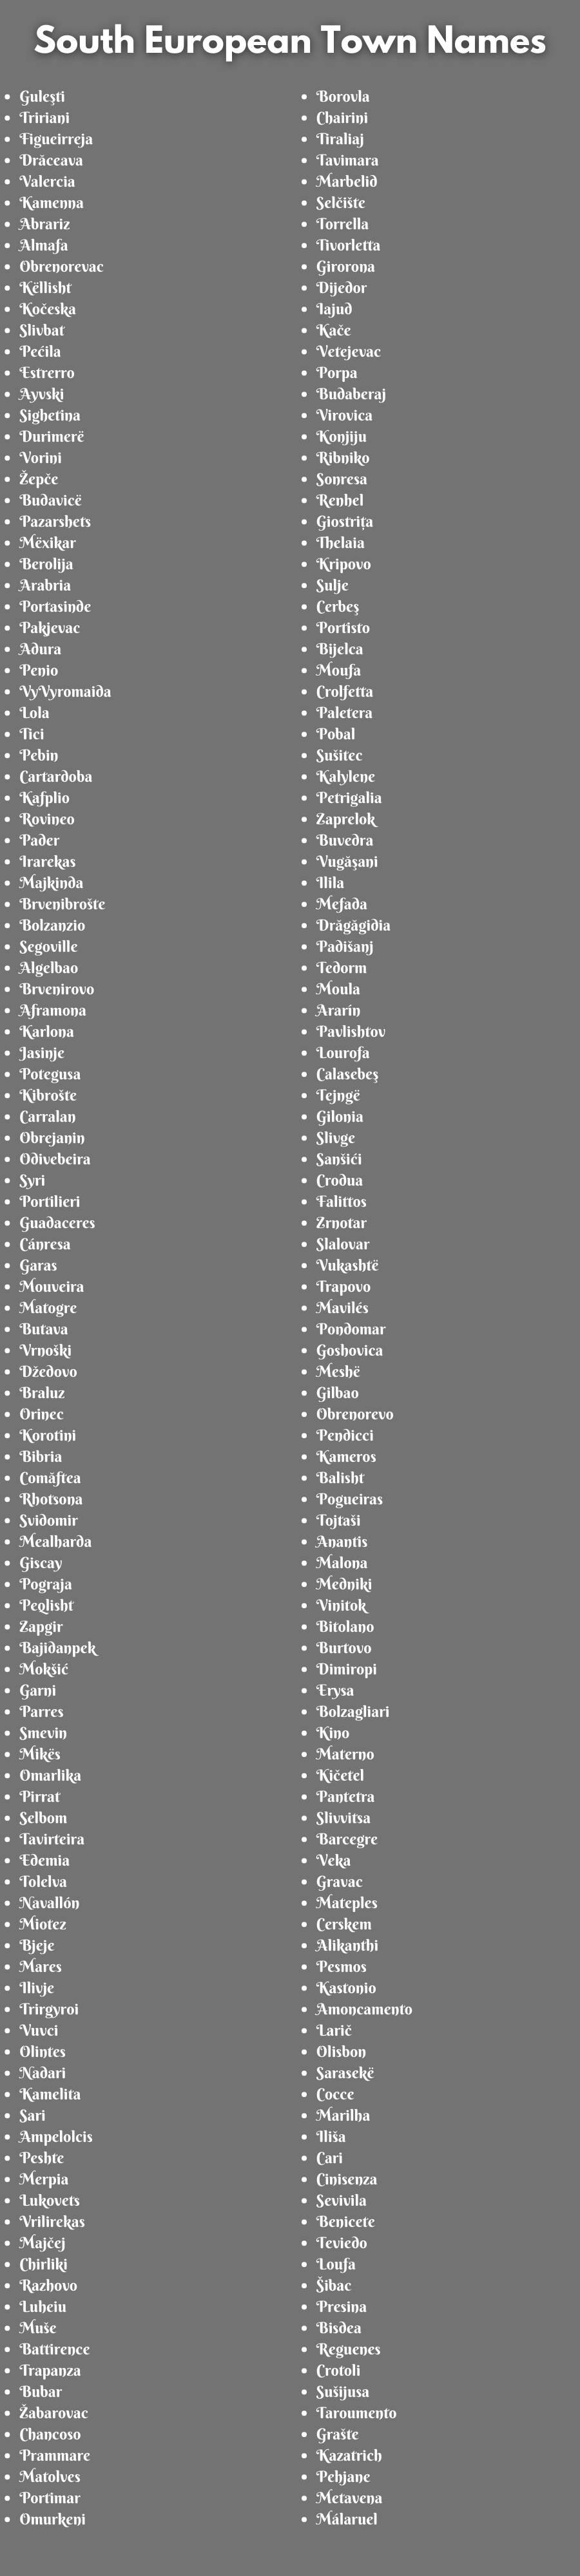 South European Town Names